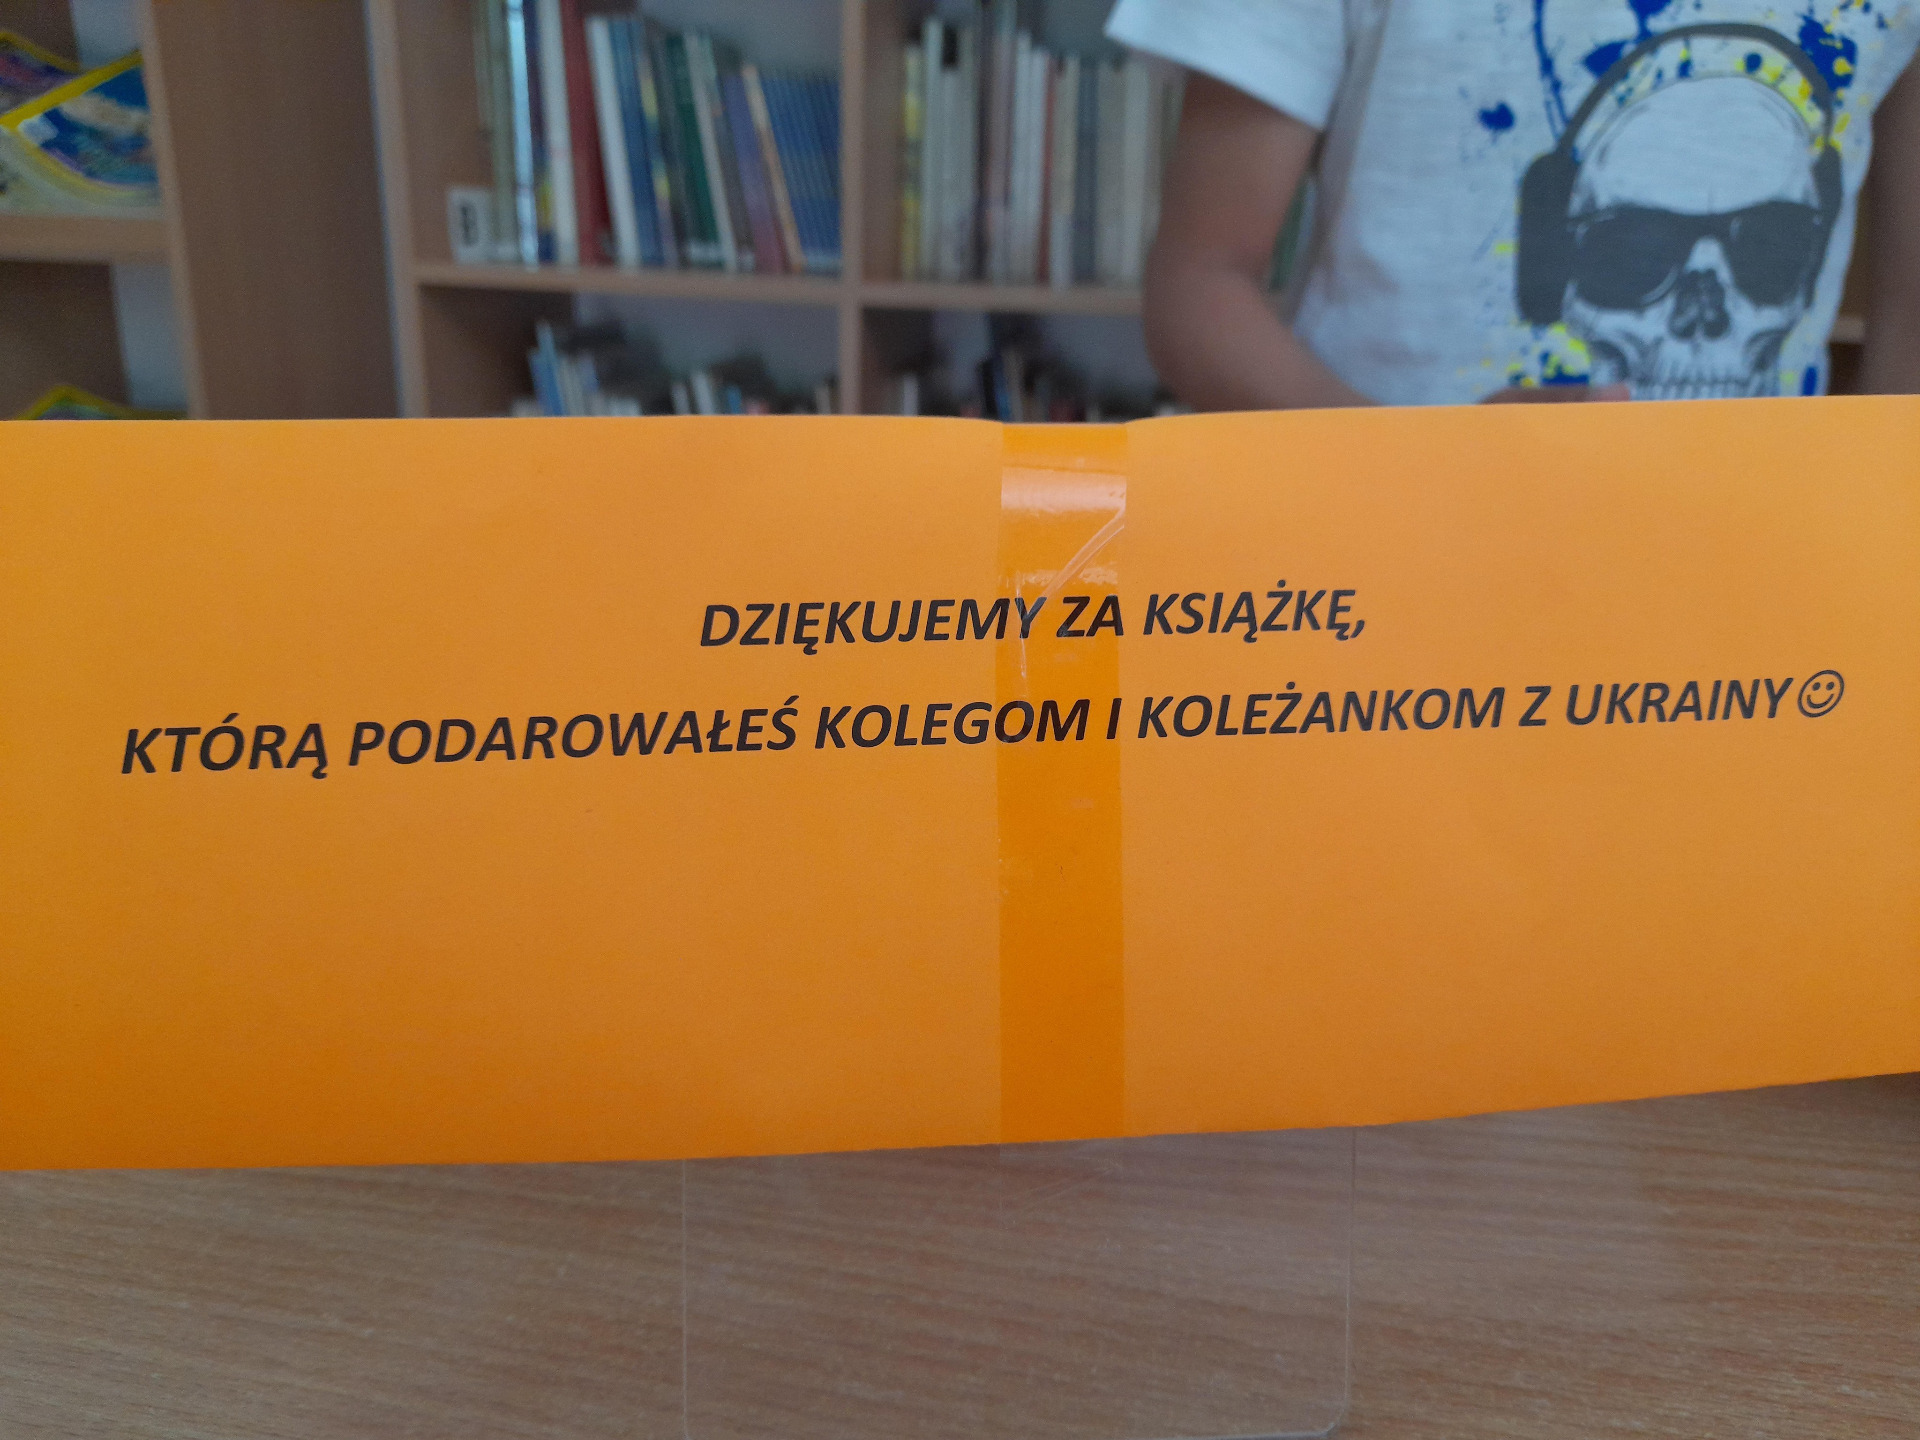 Akcja biblioteki szkolnej: Podaruj książkę ukraińskim dzieciom uczącym się w Oddziale Przygotowawczym naszej Szkoły - Obrazek 6